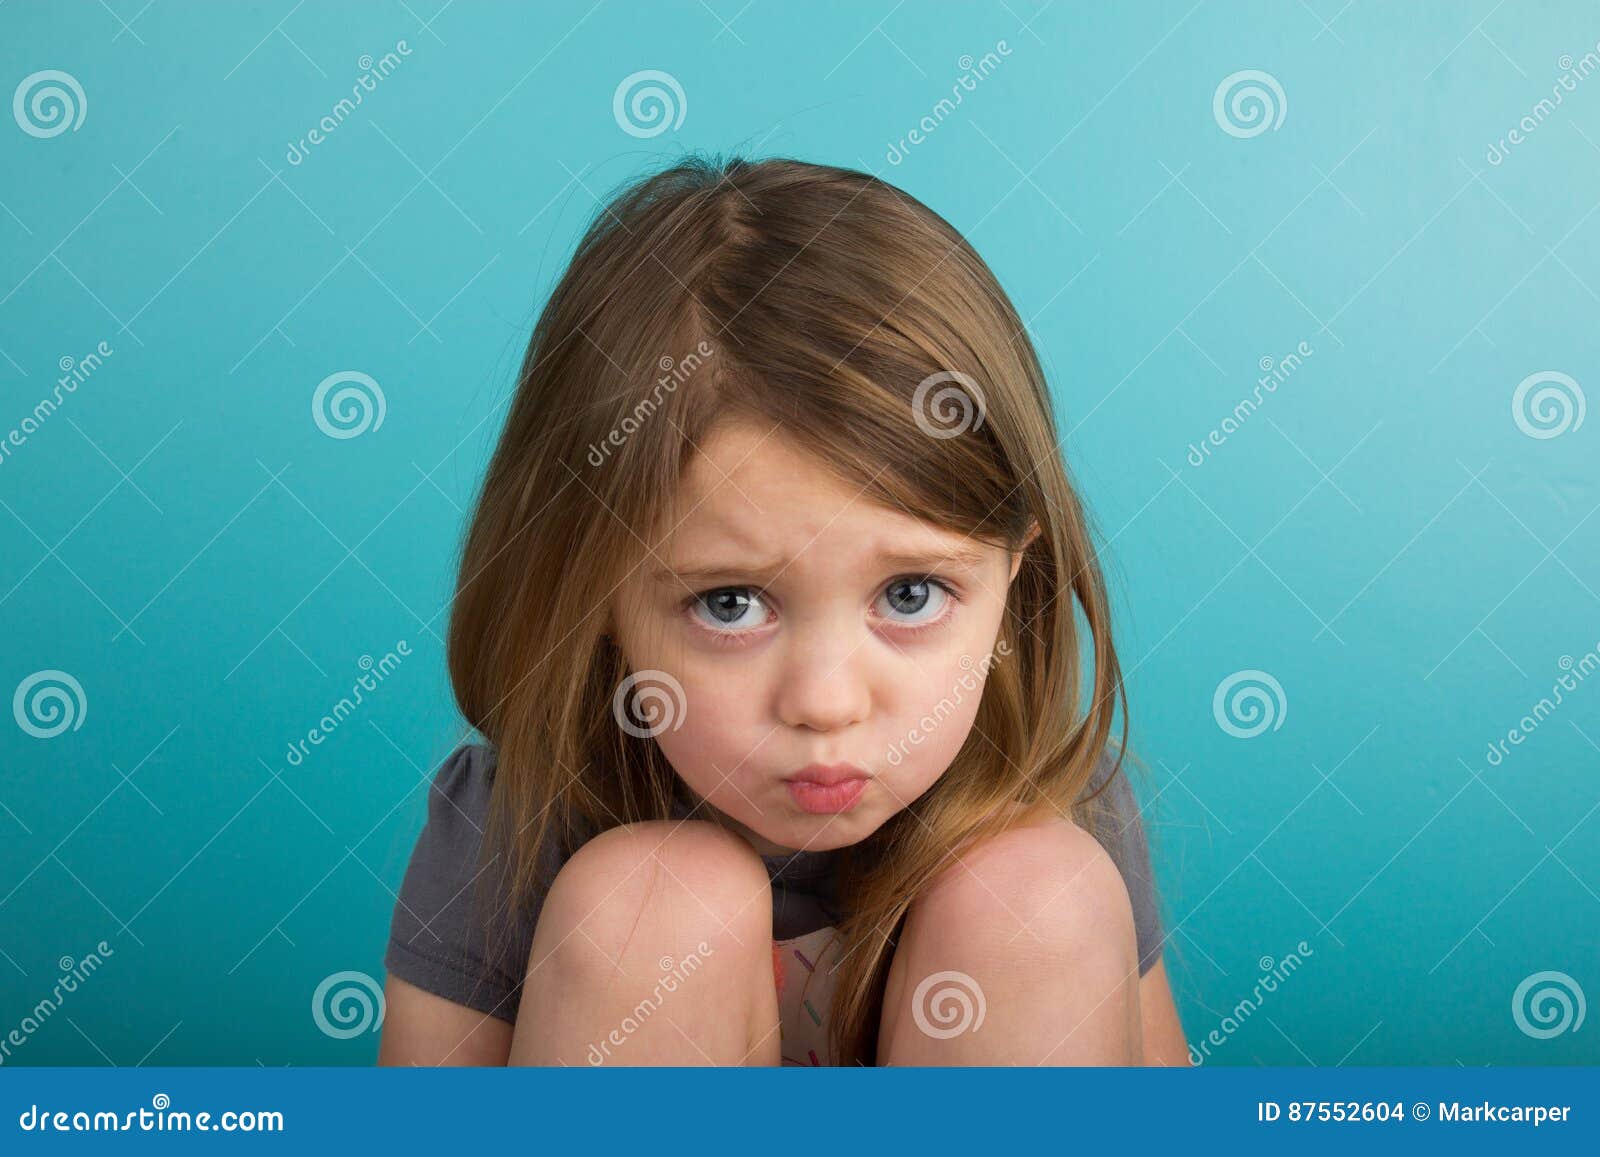 小女孩噘嘴 库存图片. 图片 包括有 眼睛, 少许, 关闭, 不耐烦, 纵向, 噘嘴, 孩子, 脾气坏 - 114440763